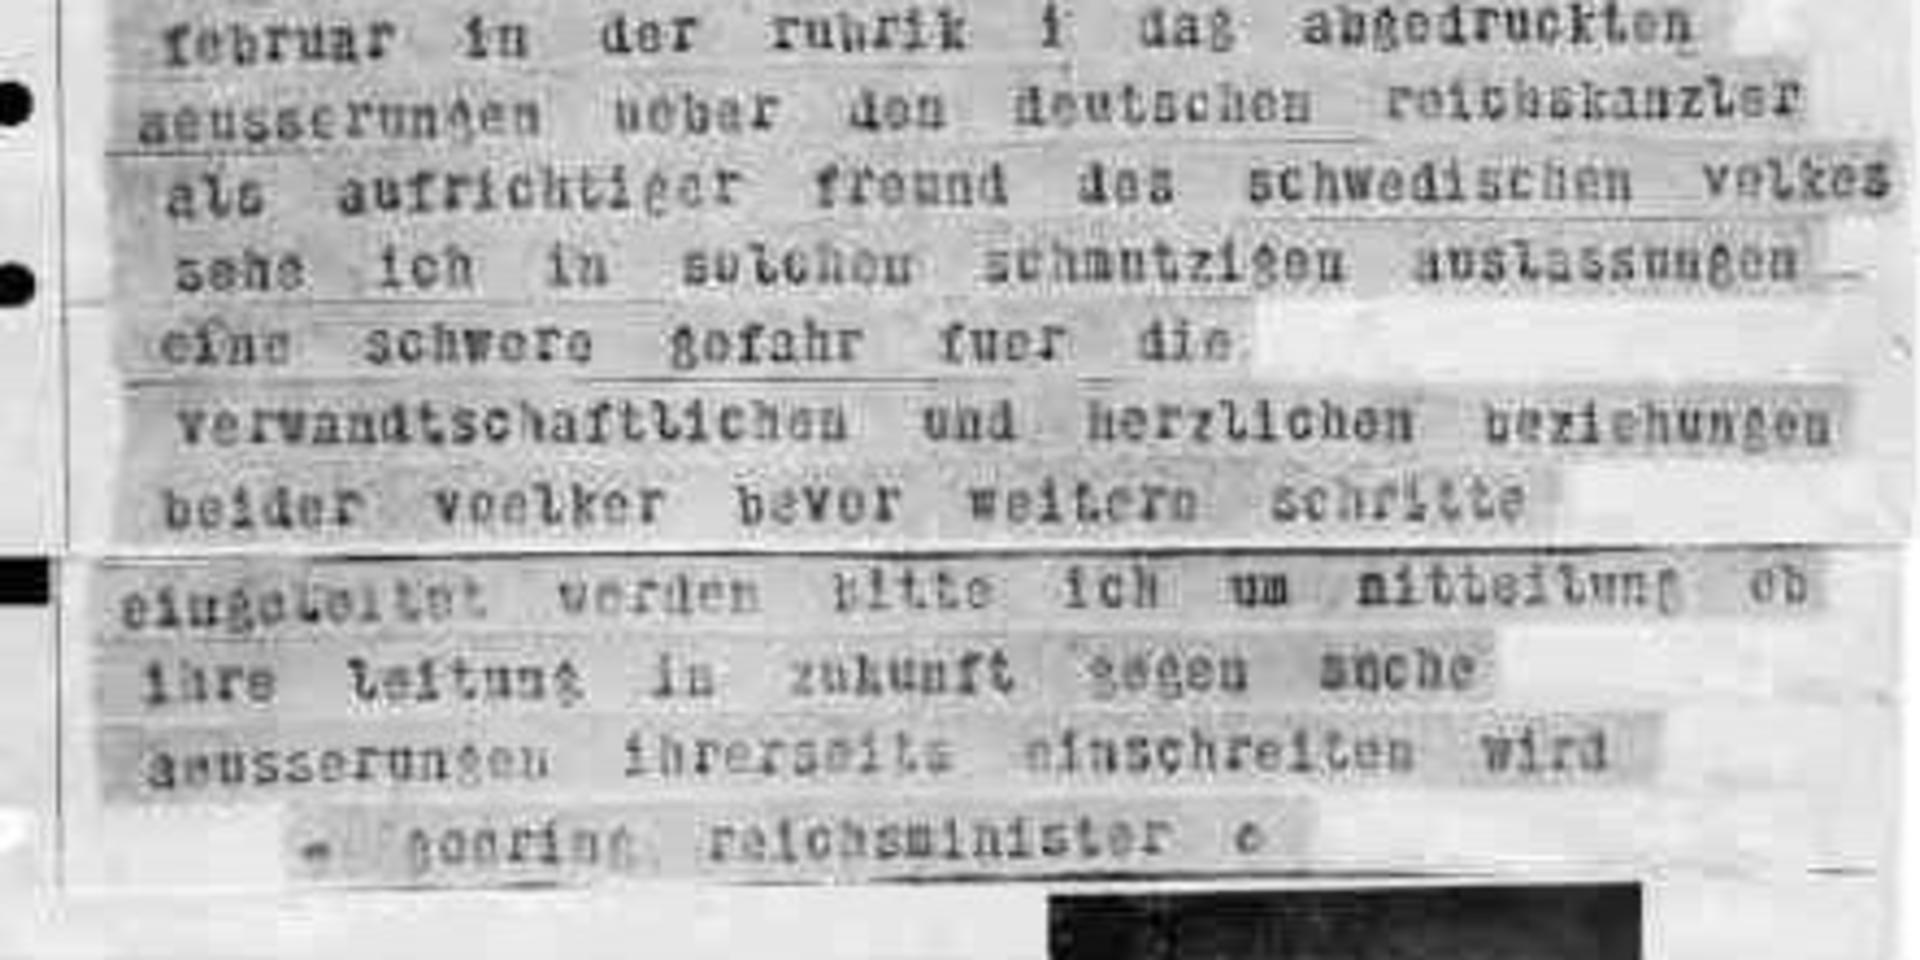 Telegrammet från Göring. 